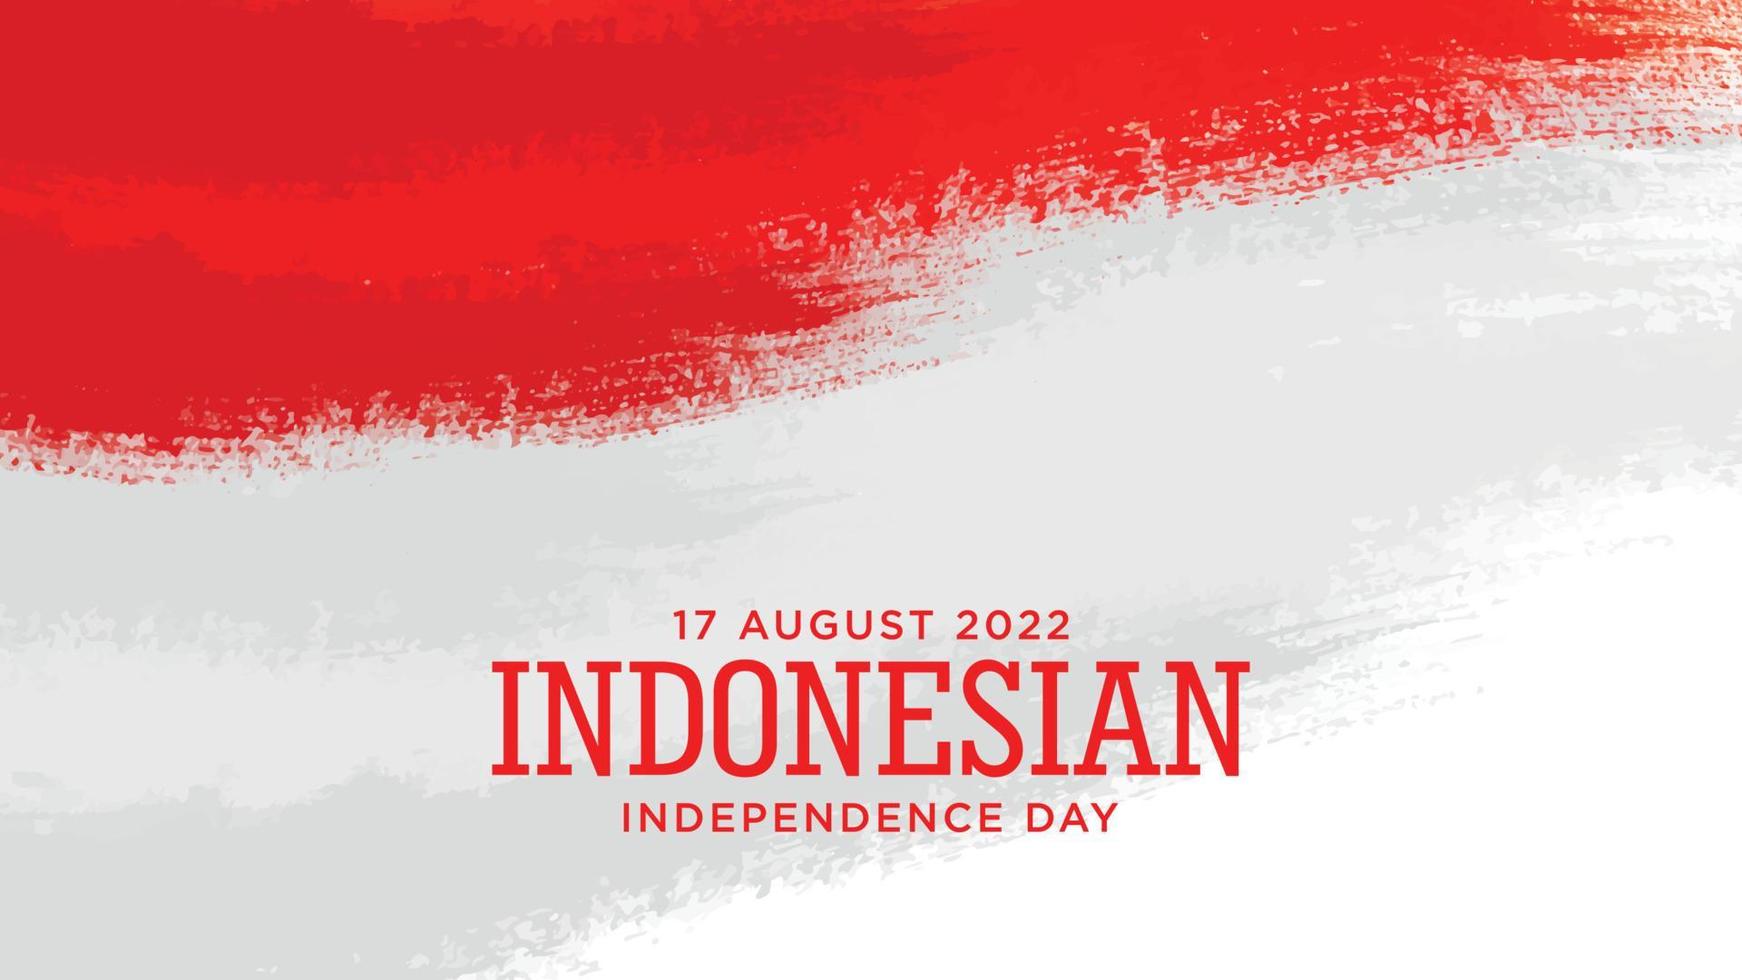 indonesien unabhängigkeitstag mit rotem grunge hintergrunddesign. indonesischer Text bedeutet Langlebigkeit Indonesien. gute vorlage für das design des indonesischen unabhängigkeitstages. vektor